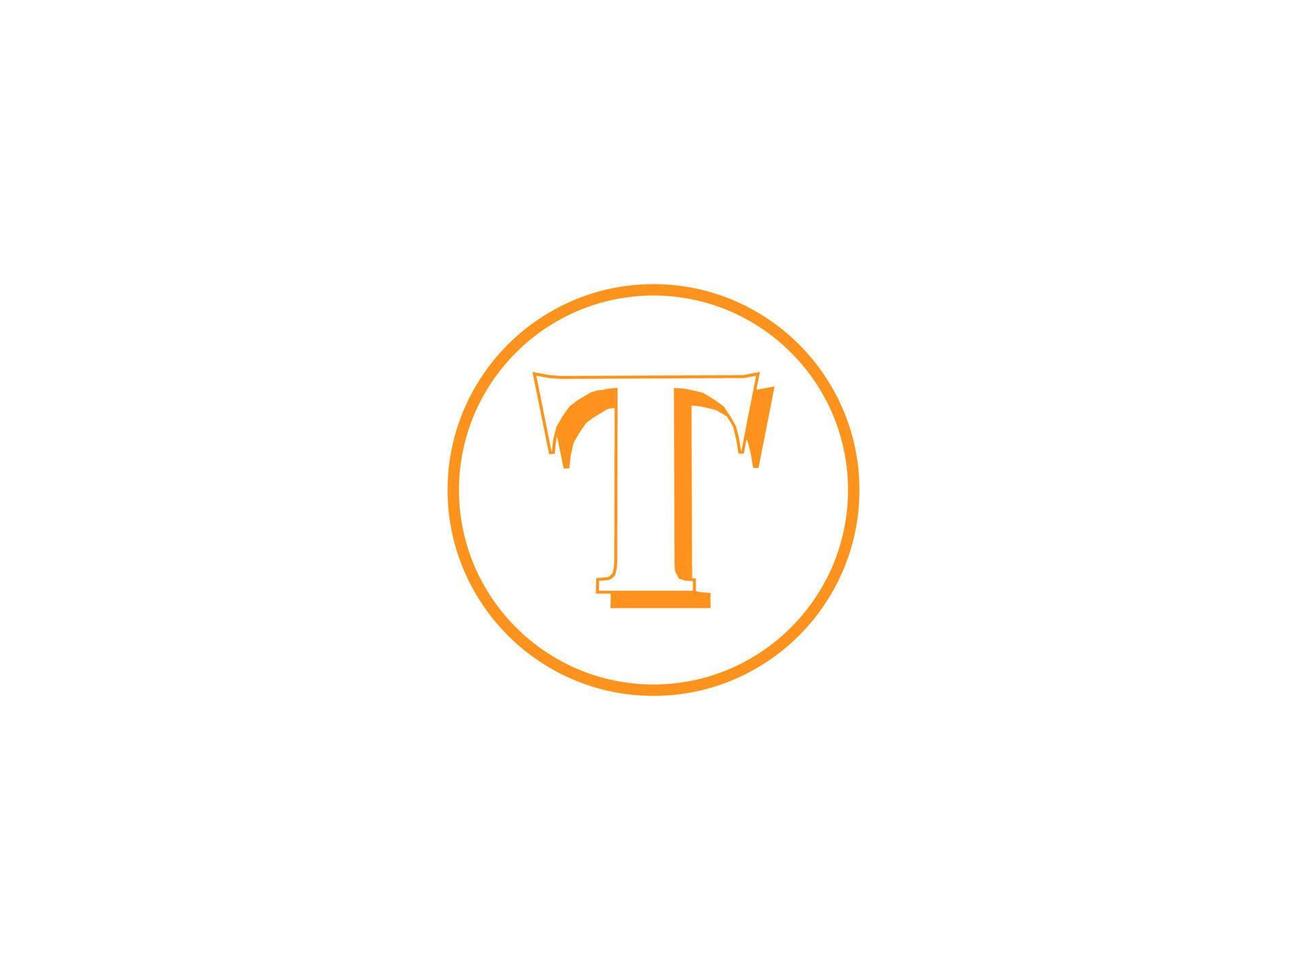 brev t logotyp design vektor